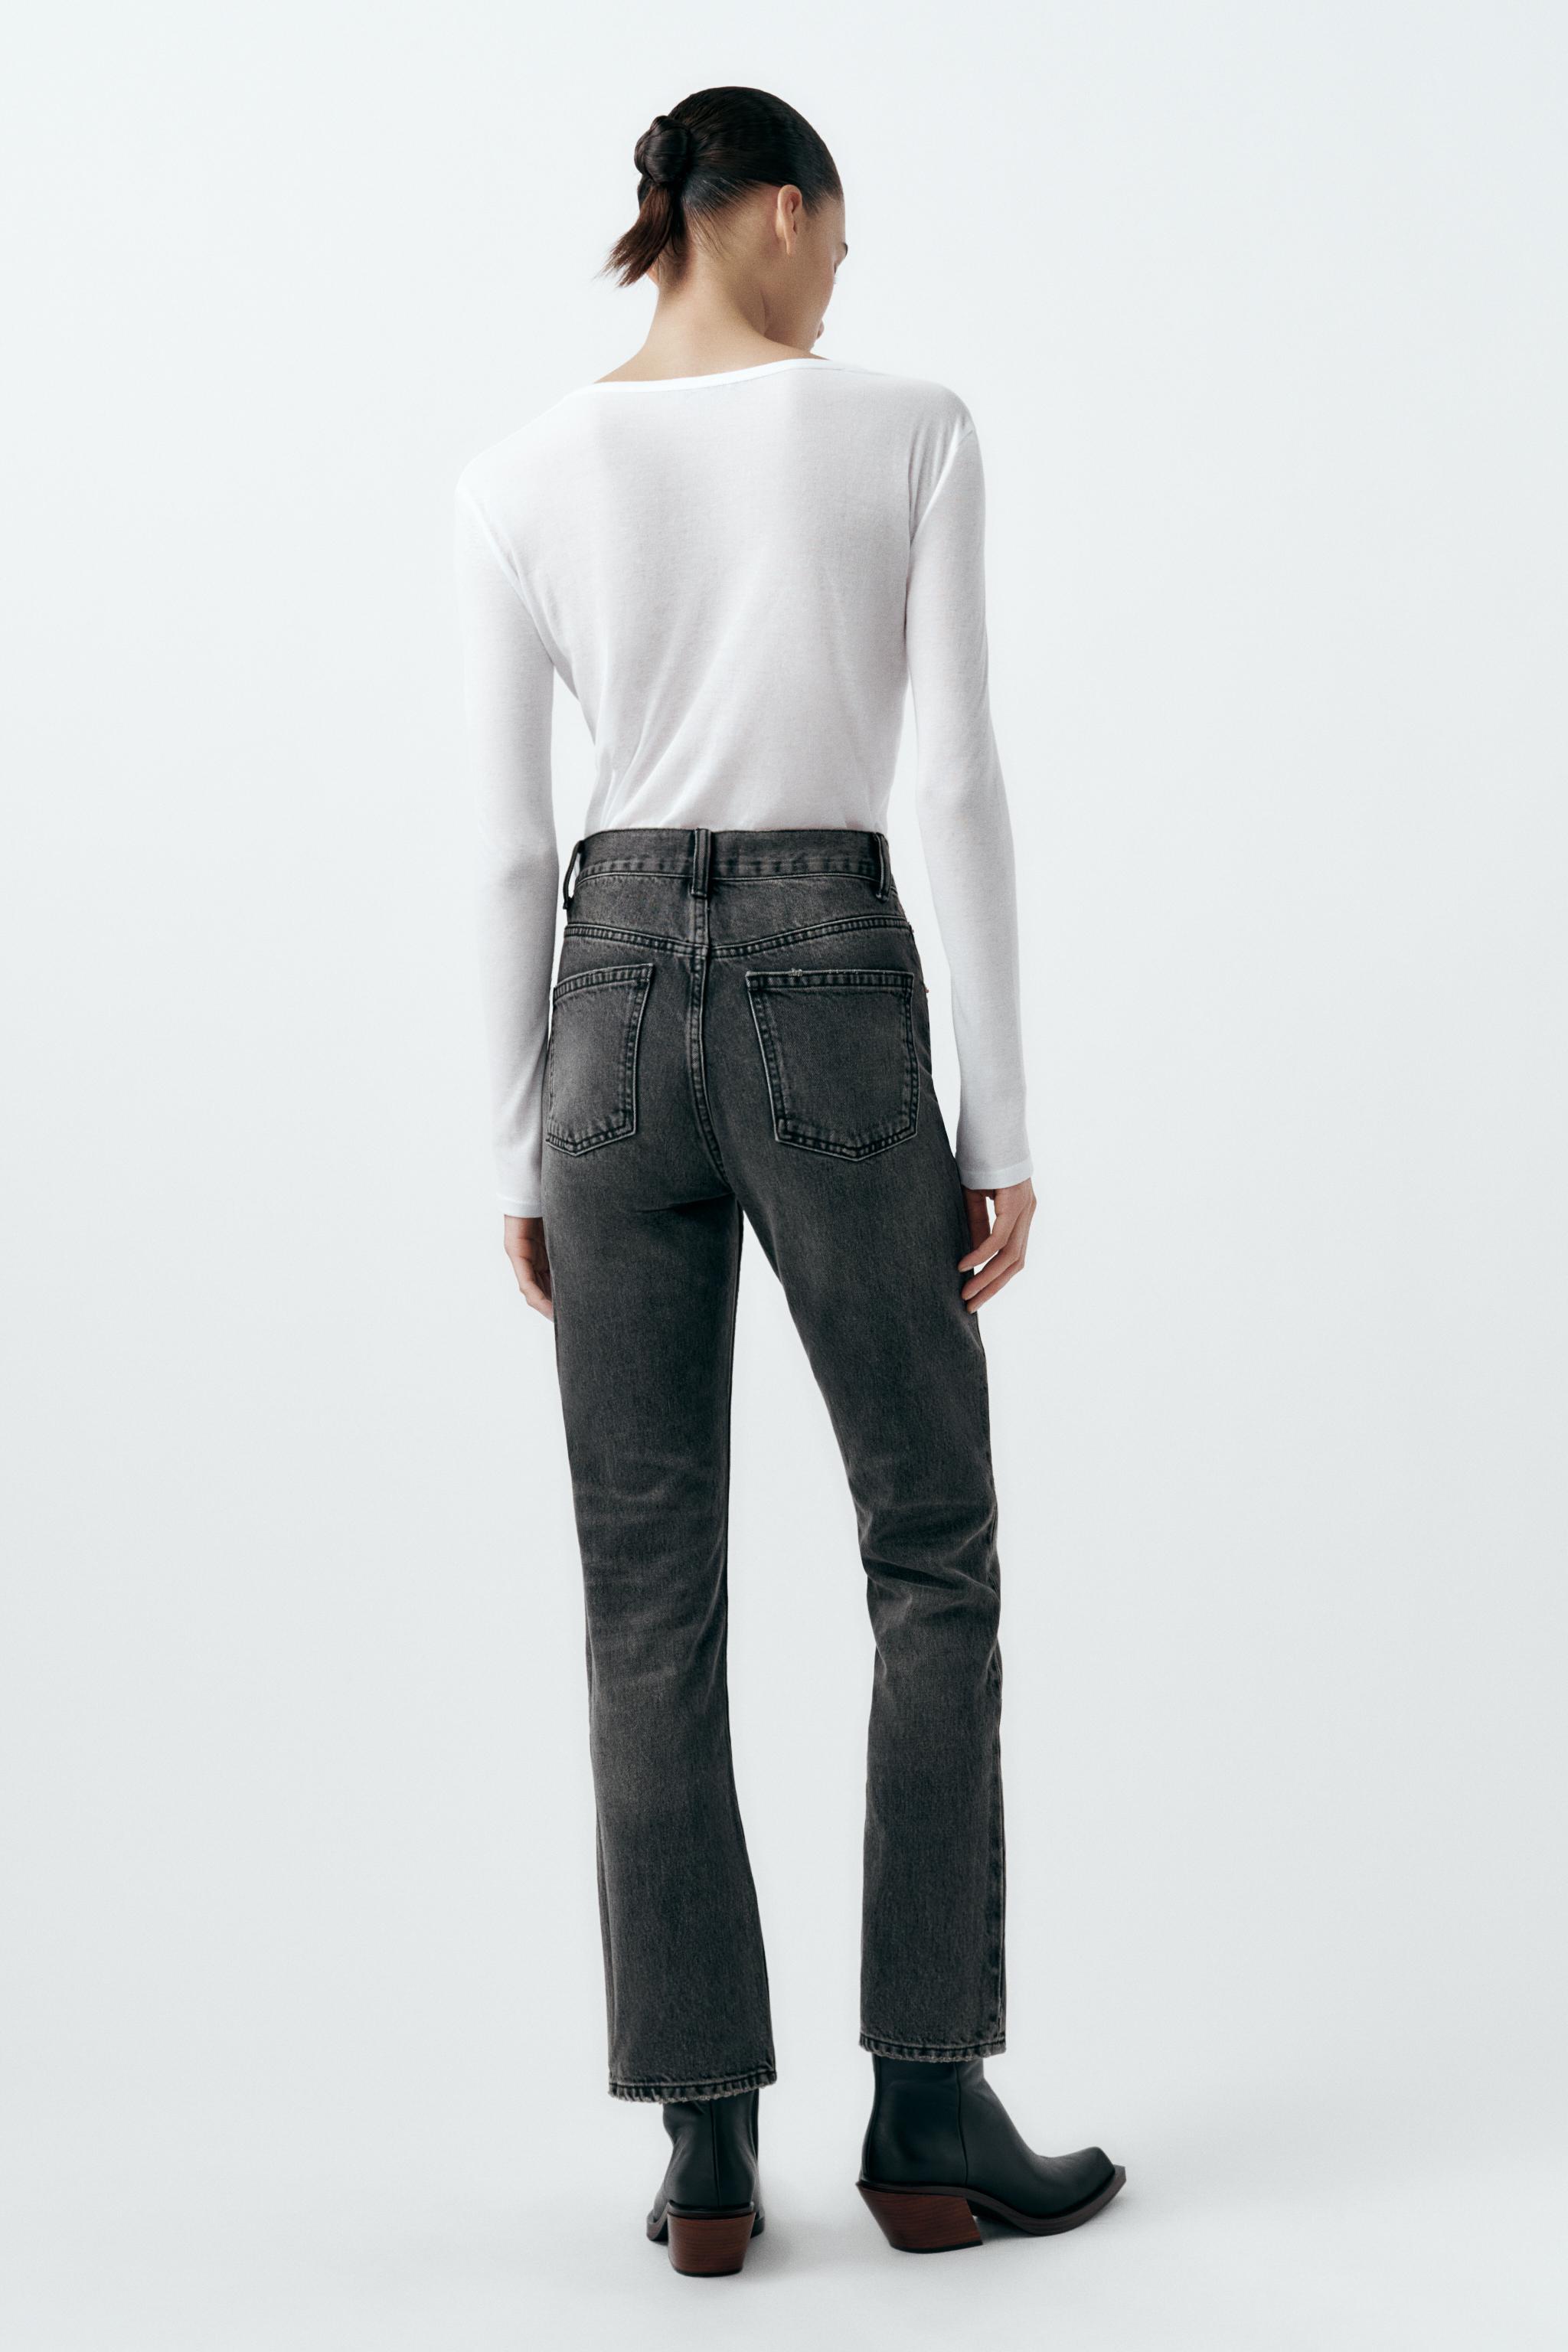 Zara Trf Slim Split Blogger Jeans - Gem